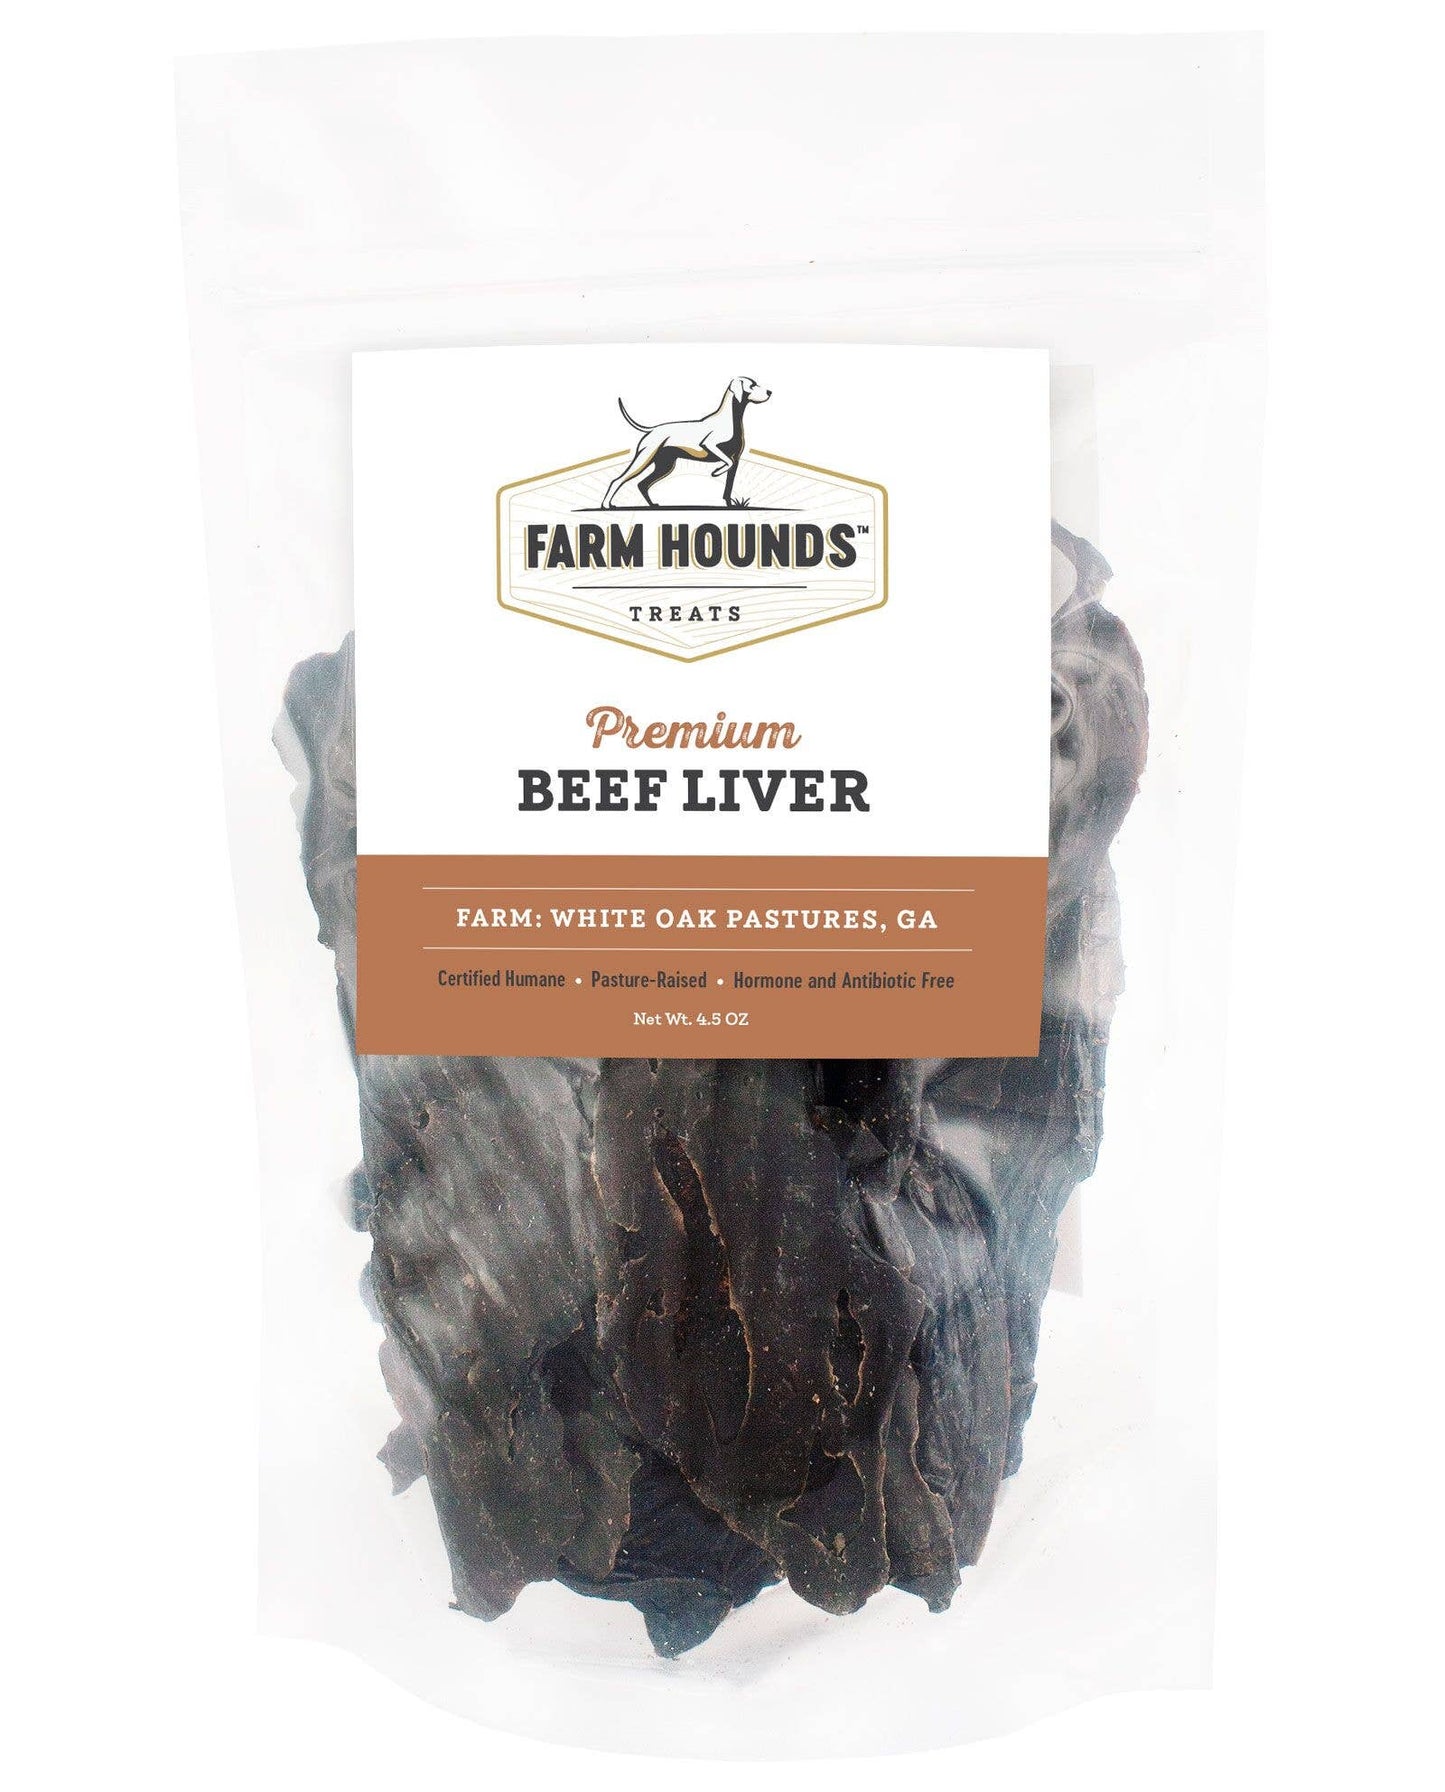 Farm Hounds - Beef Liver